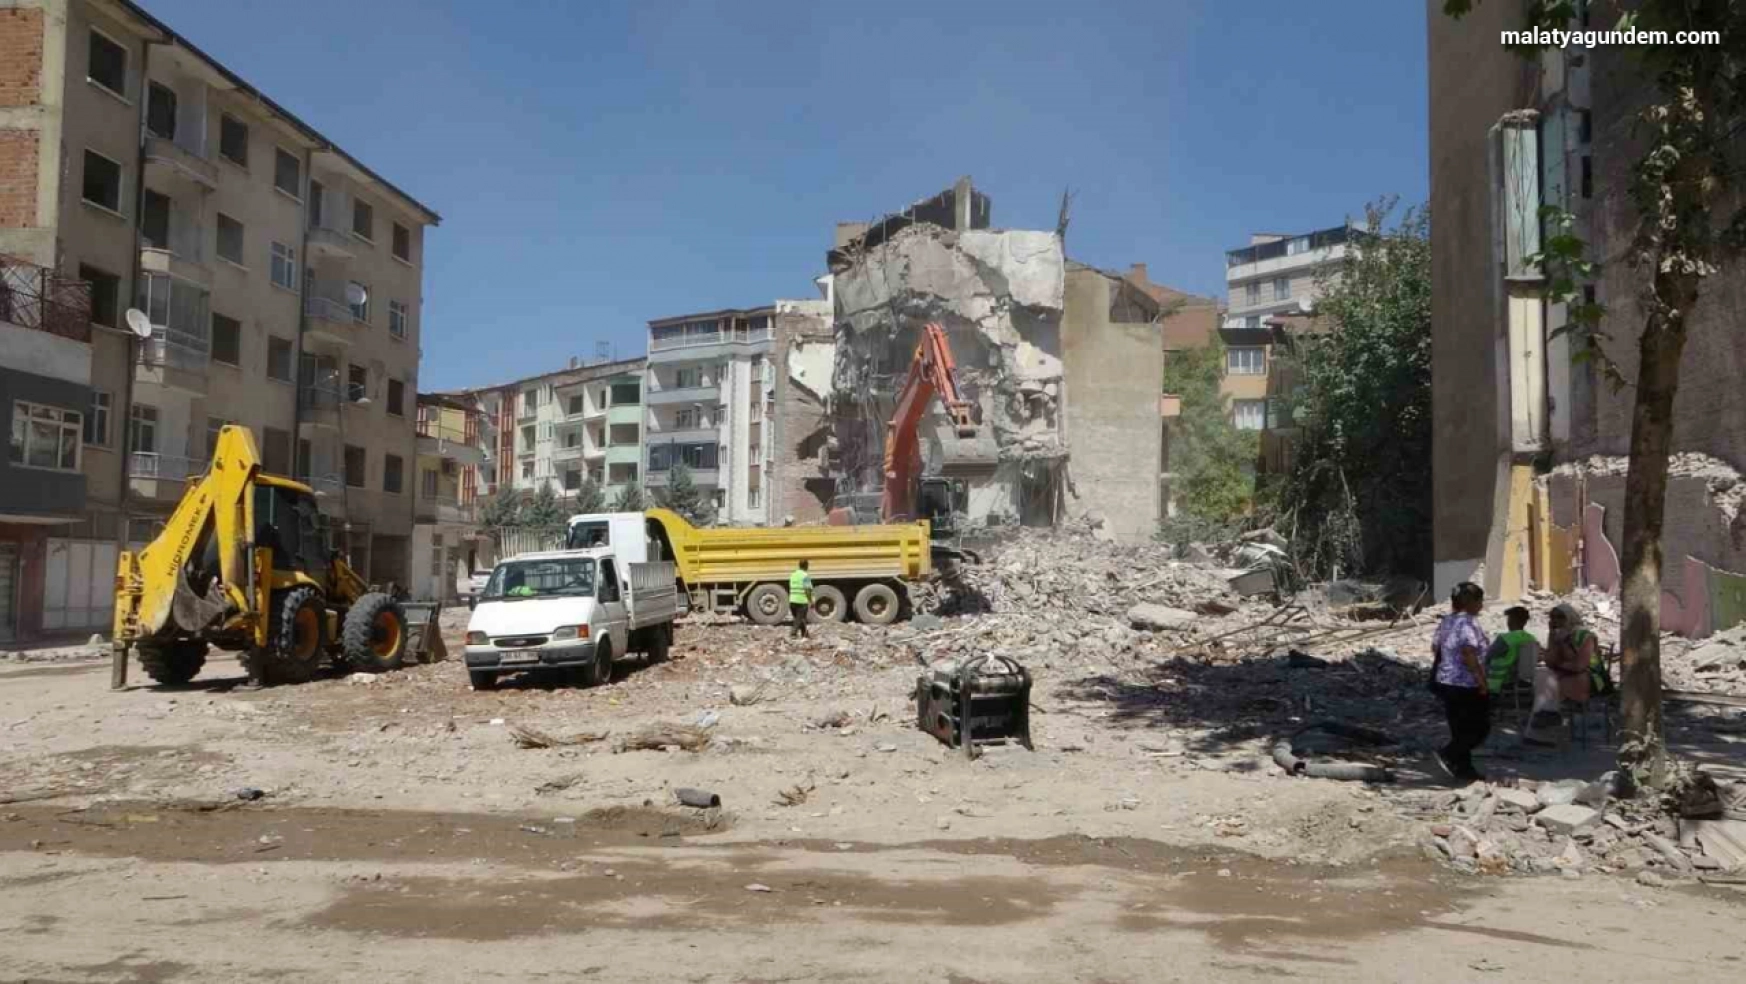 Malatya'da ağır hasarlı binanın kontrollü yıkımında göçük: 1 yaralı